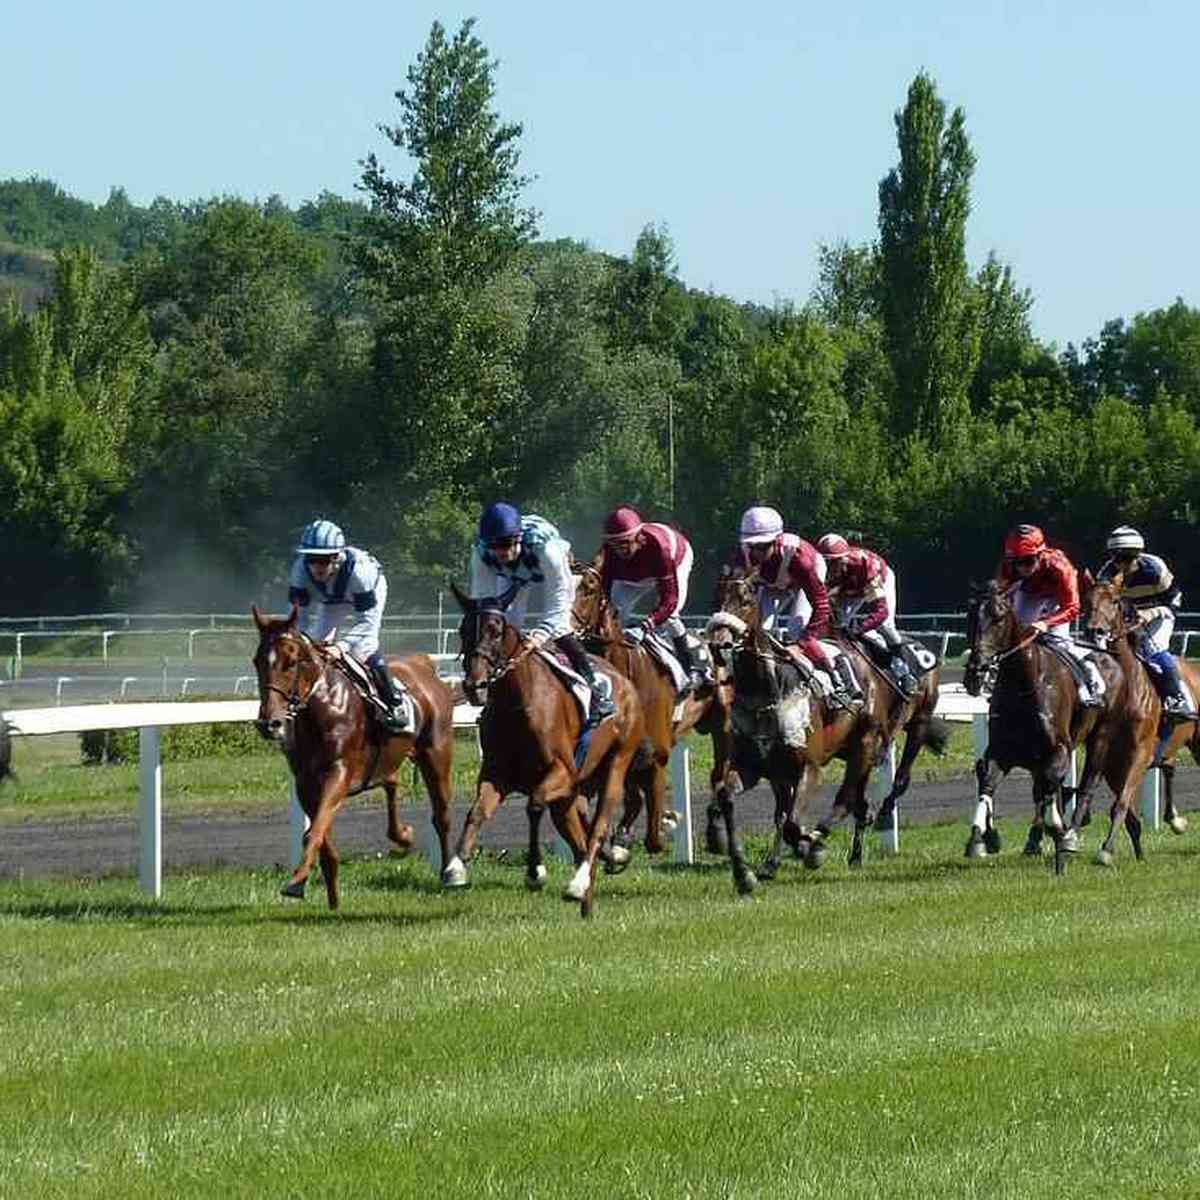 Legalização dos jogos de azar anima setor de corridas de cavalo no